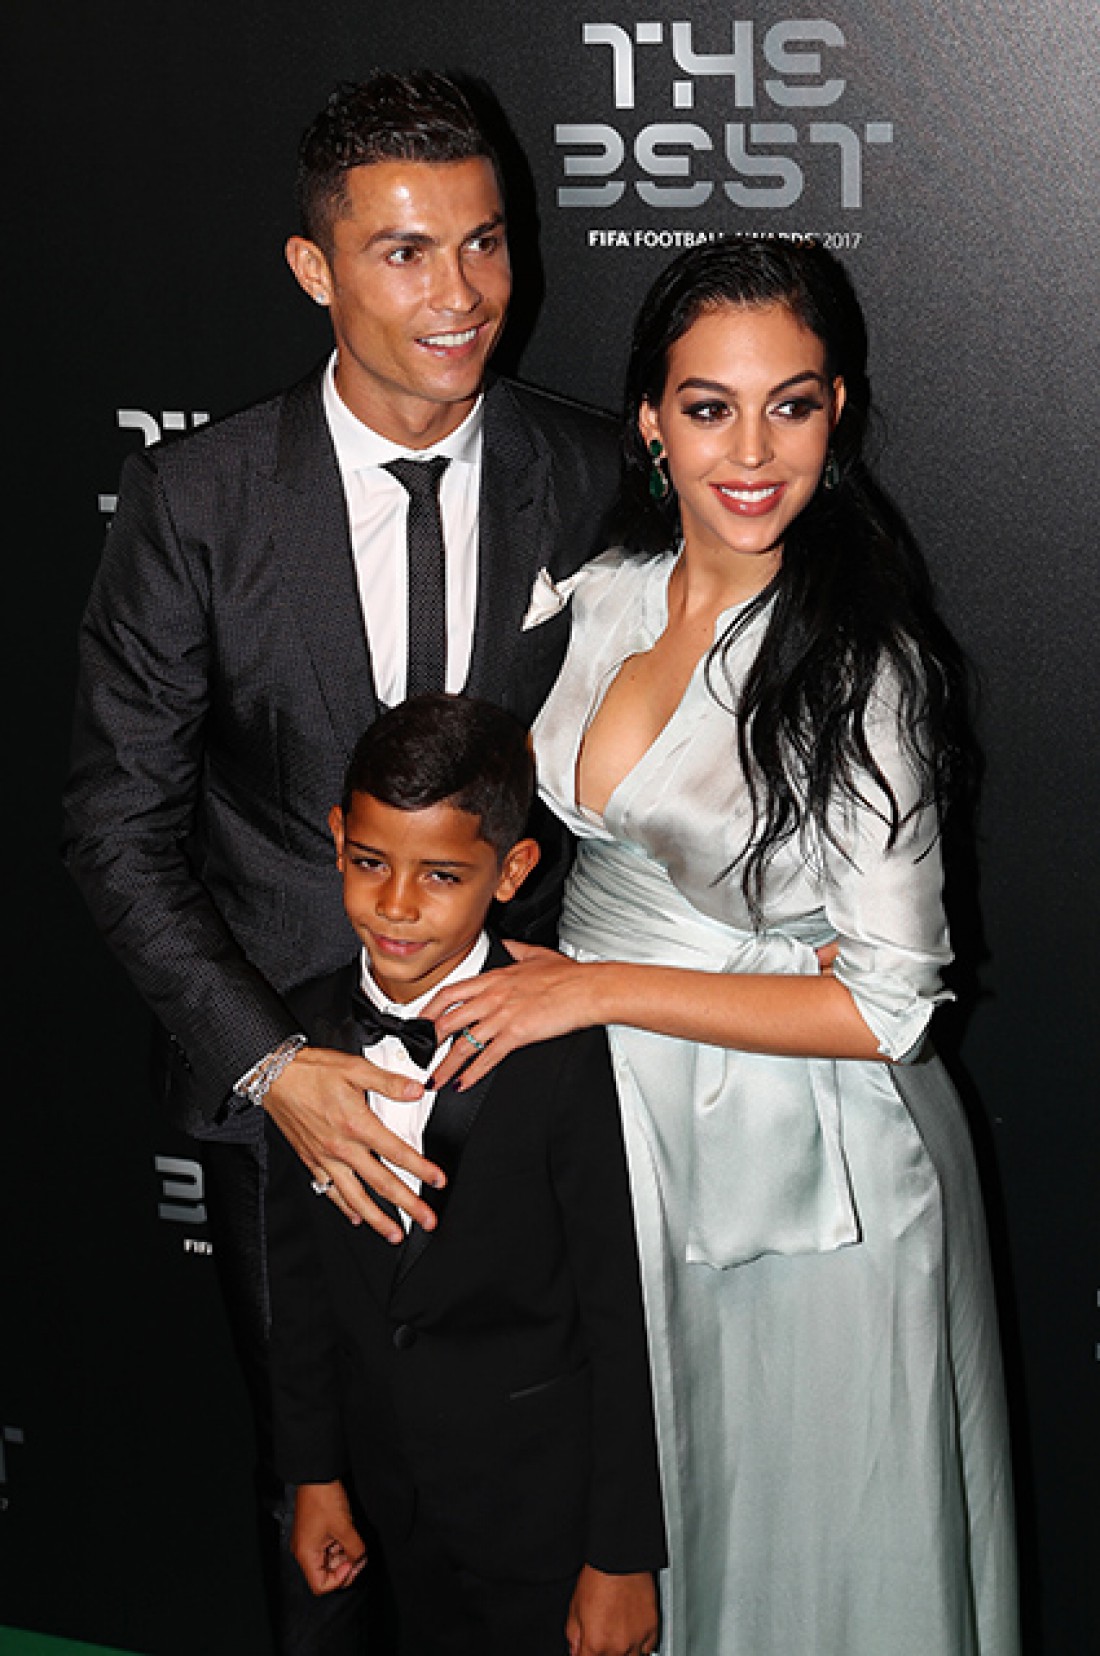 Криштиану Роналду с сыном и девушкой Джорджиной Родригес